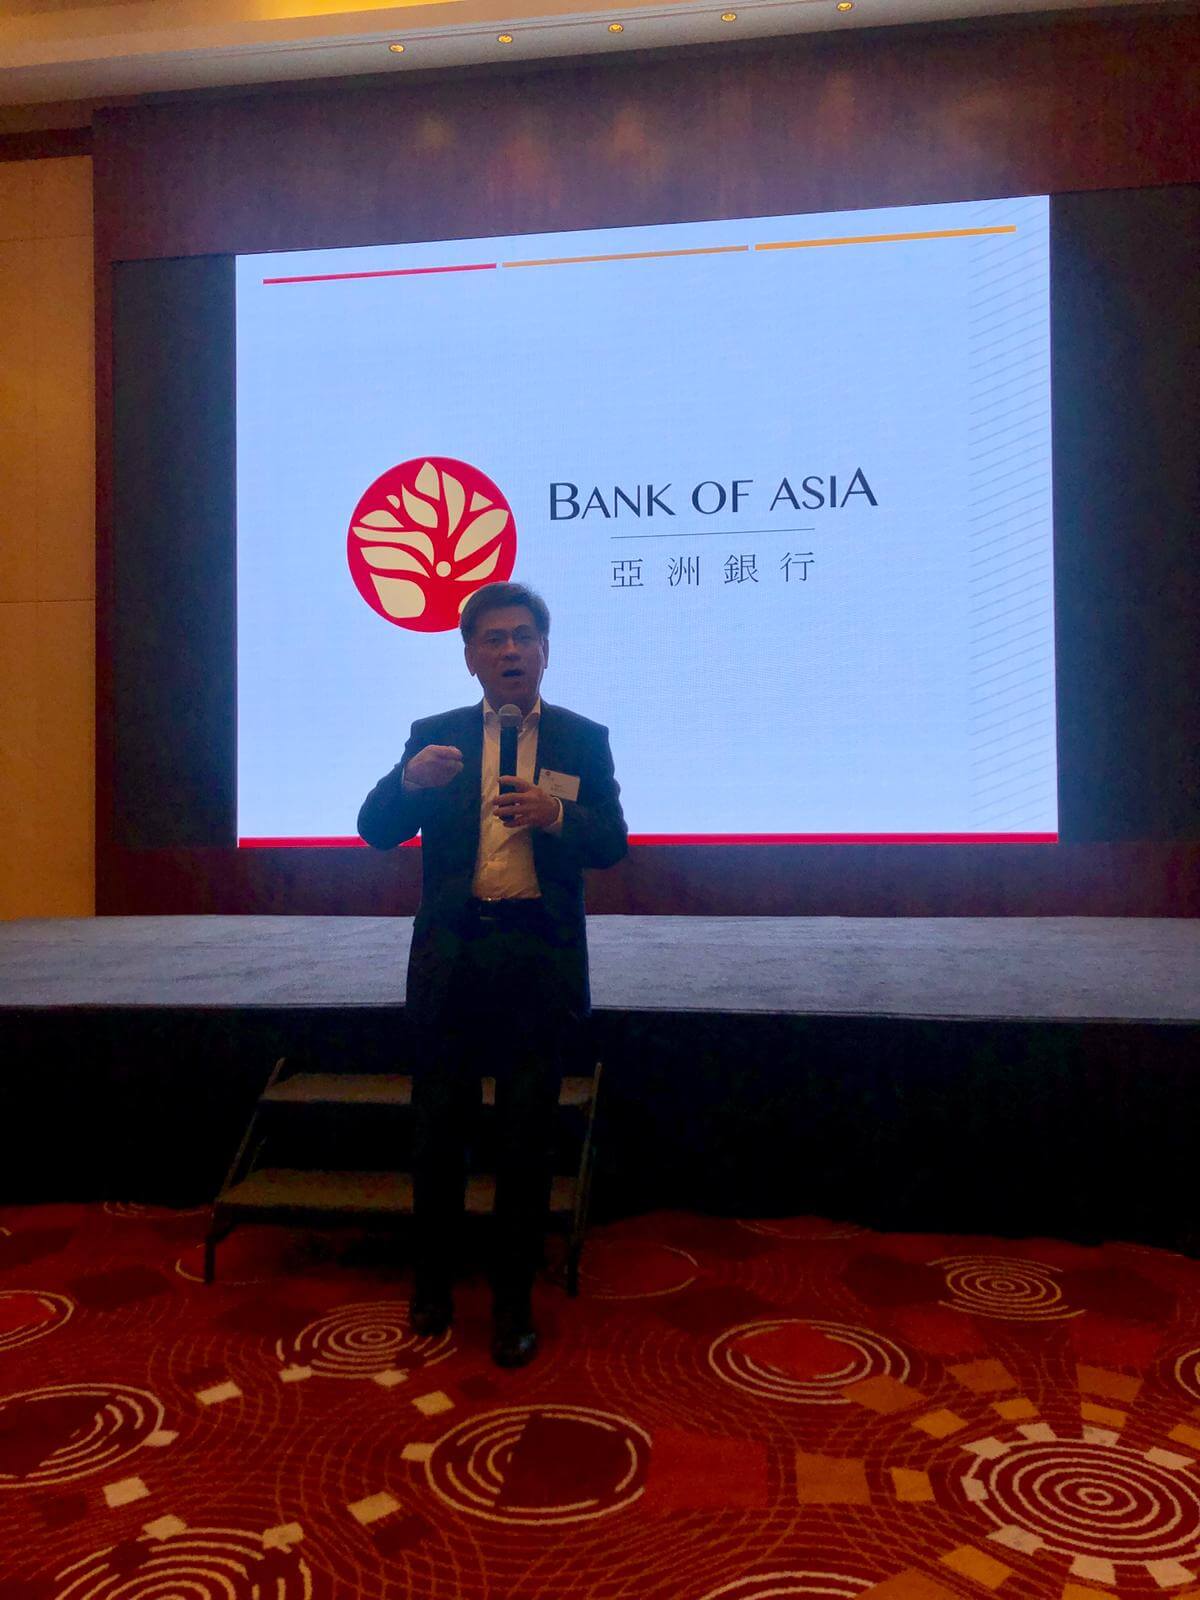 亚银国际金融集团首席执行官梁建文先生向与会者介绍集团概况